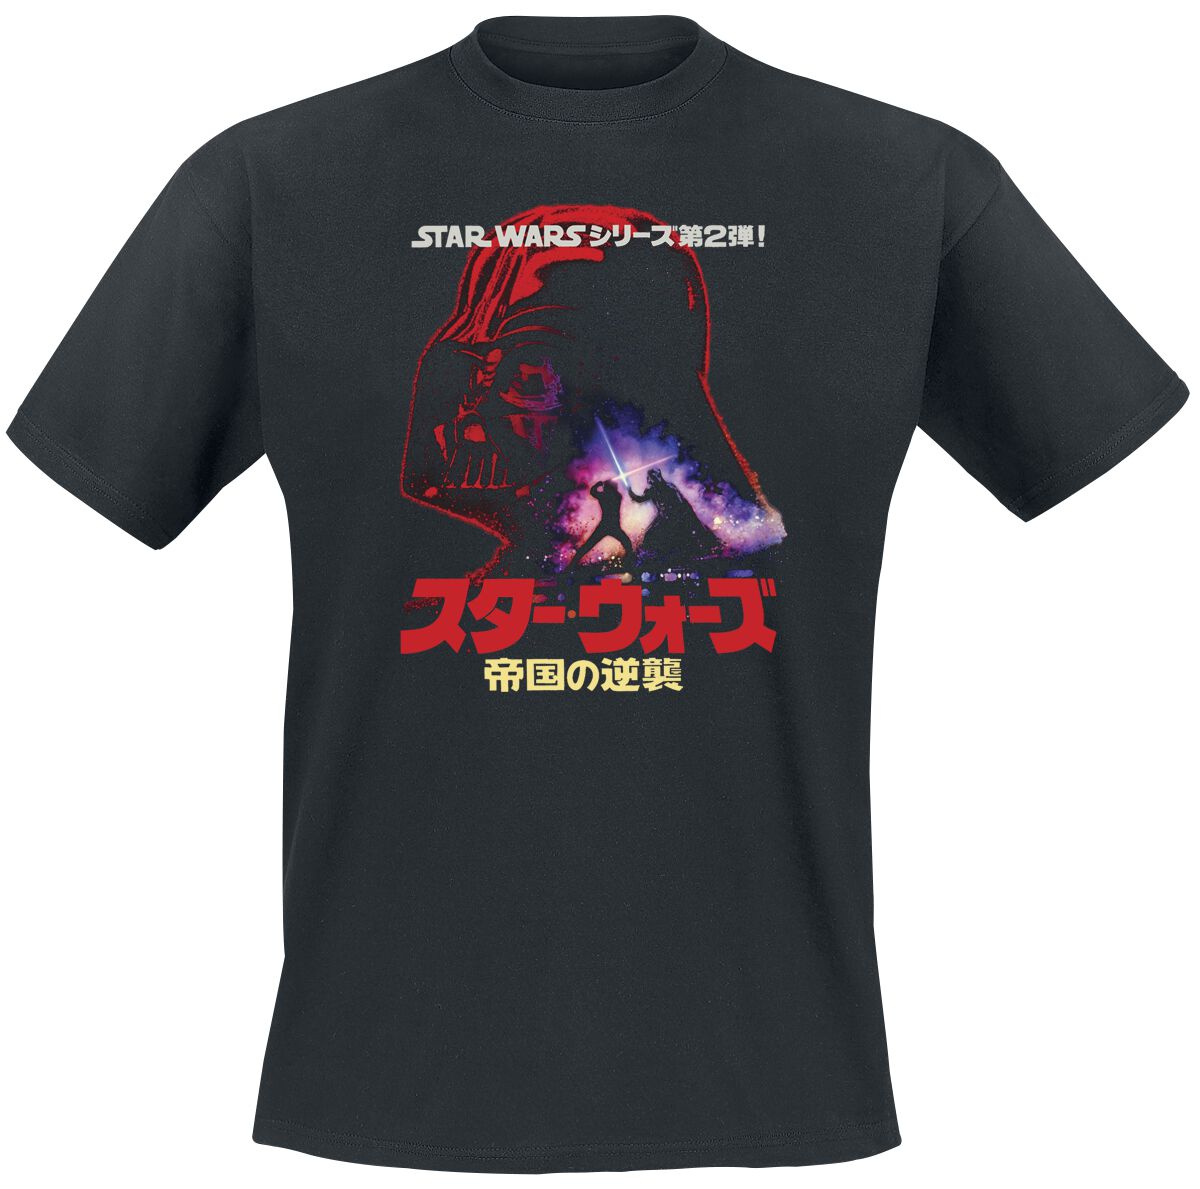 Star Wars Darth Vader - Poster T-Shirt schwarz in XXL